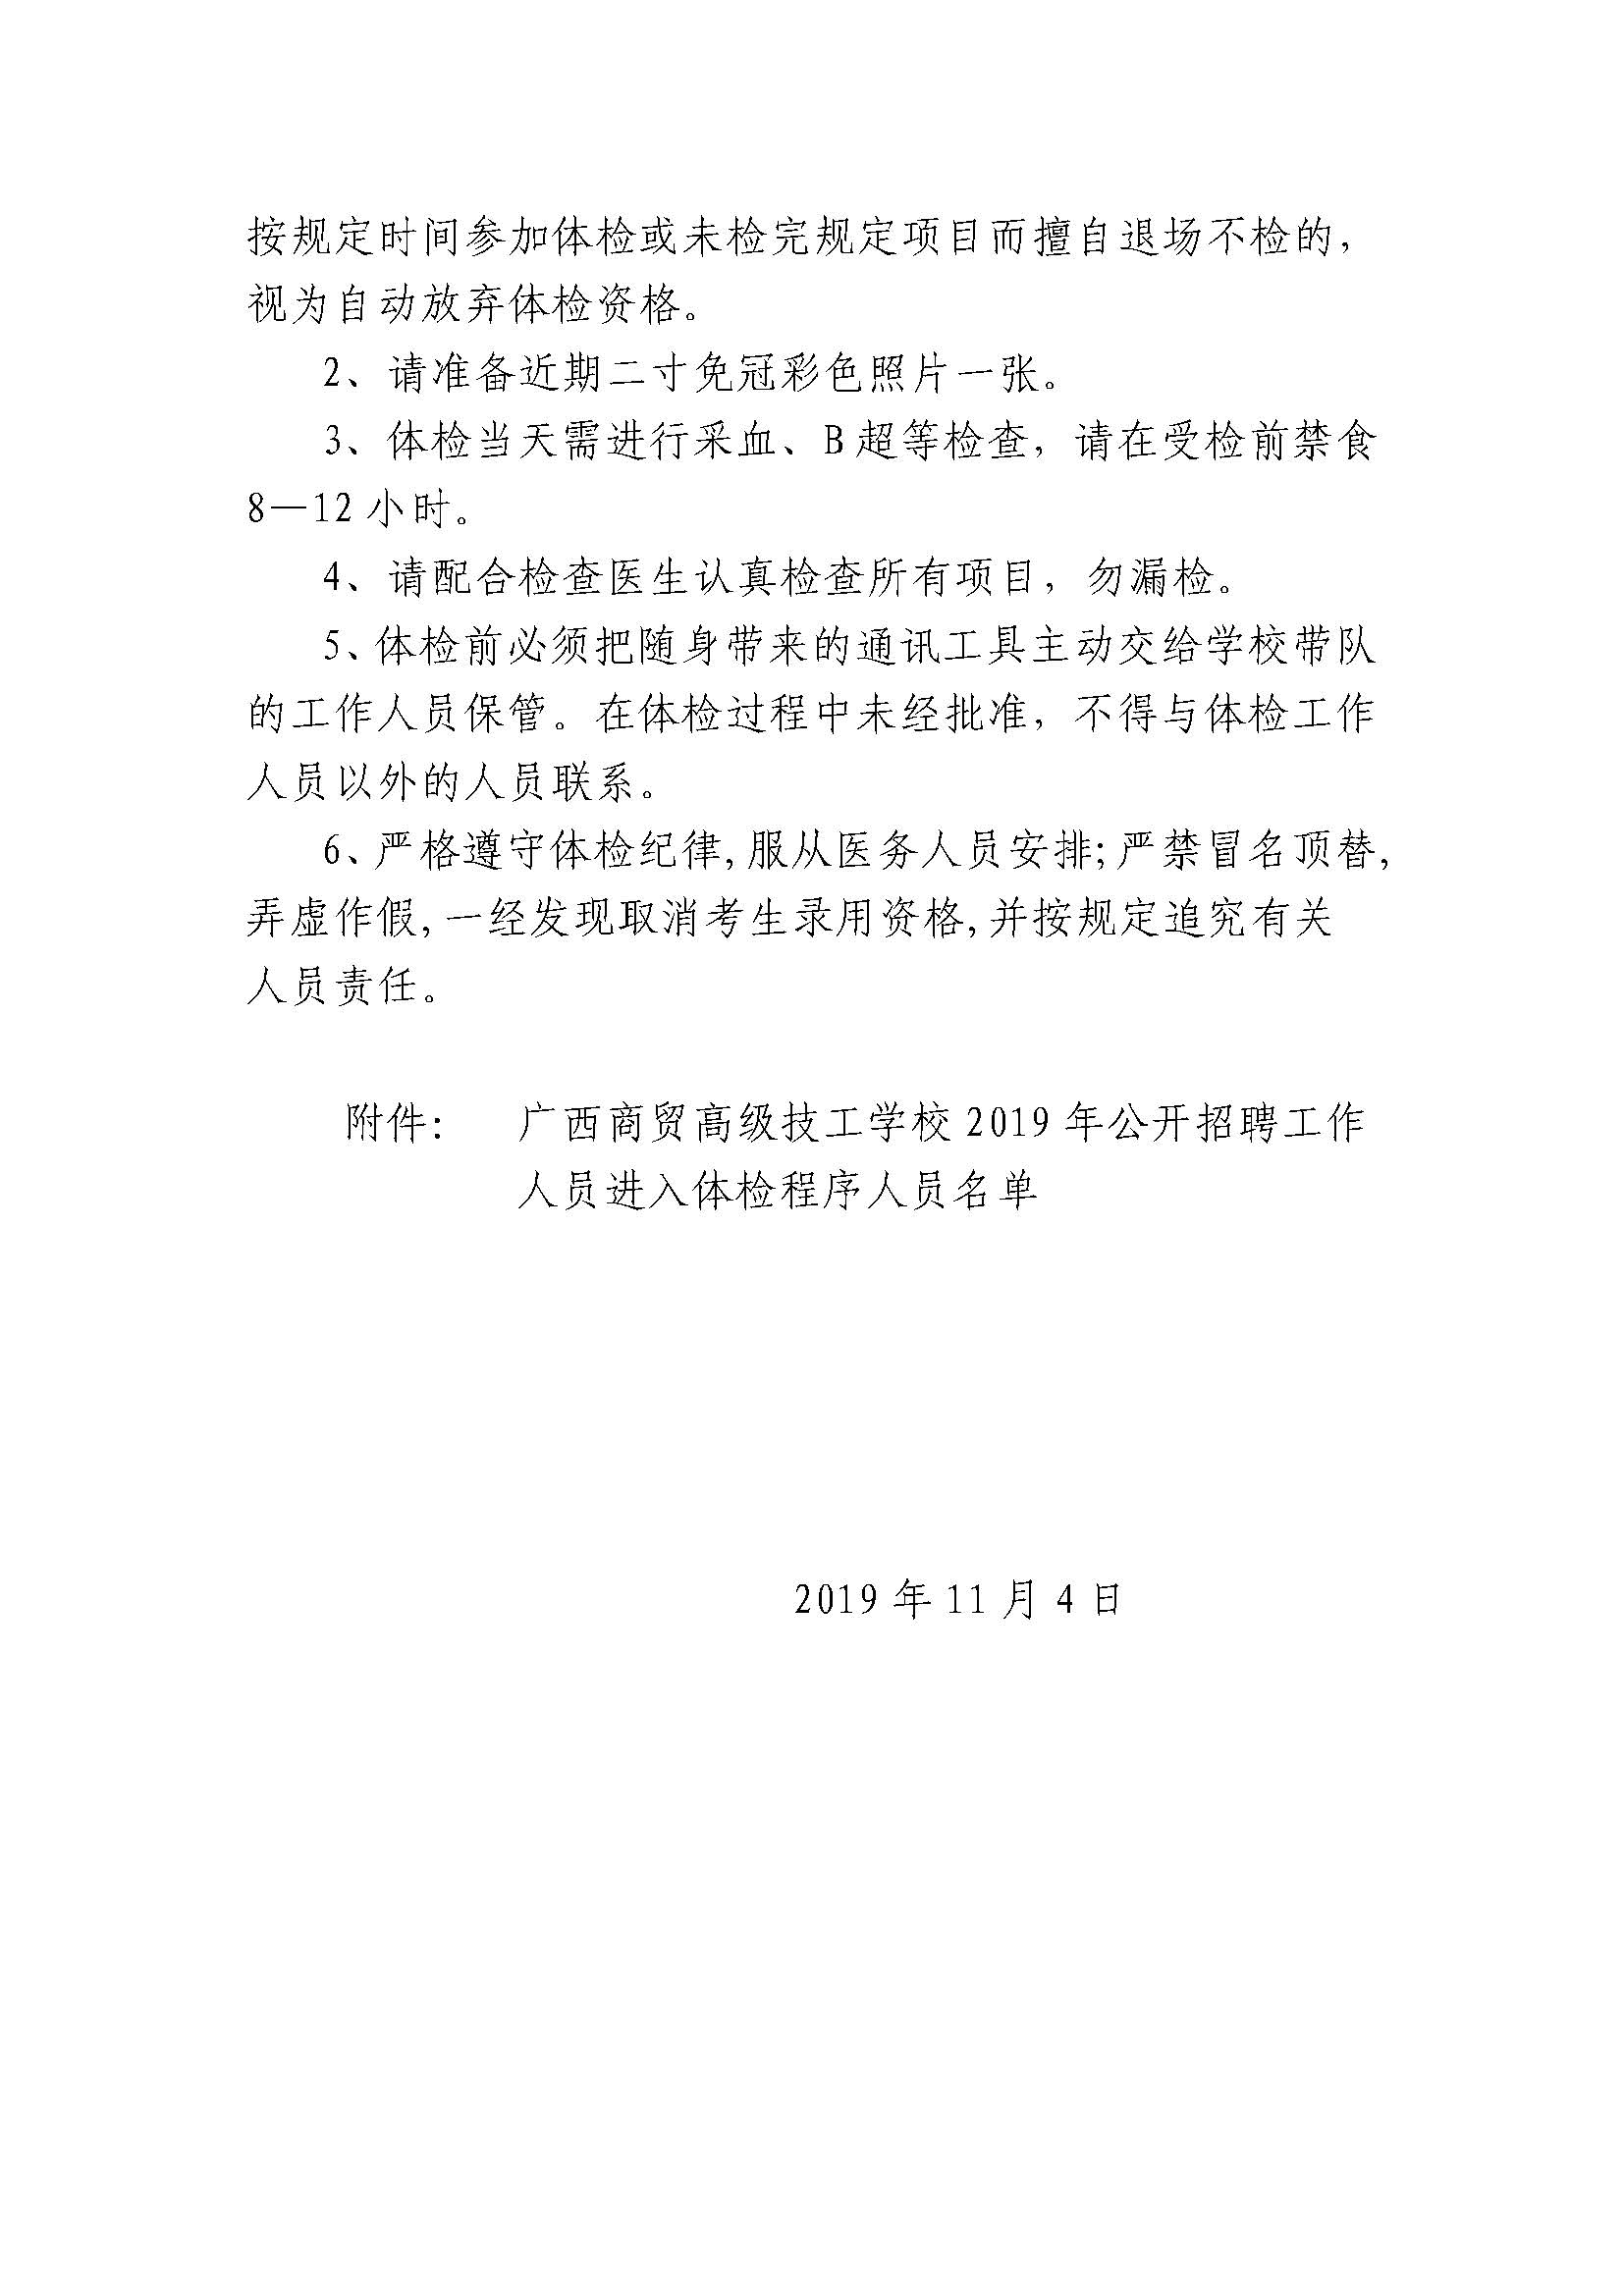 广西商贸高级技工学校2019年公招体检公告（定稿）_页面_2.jpg